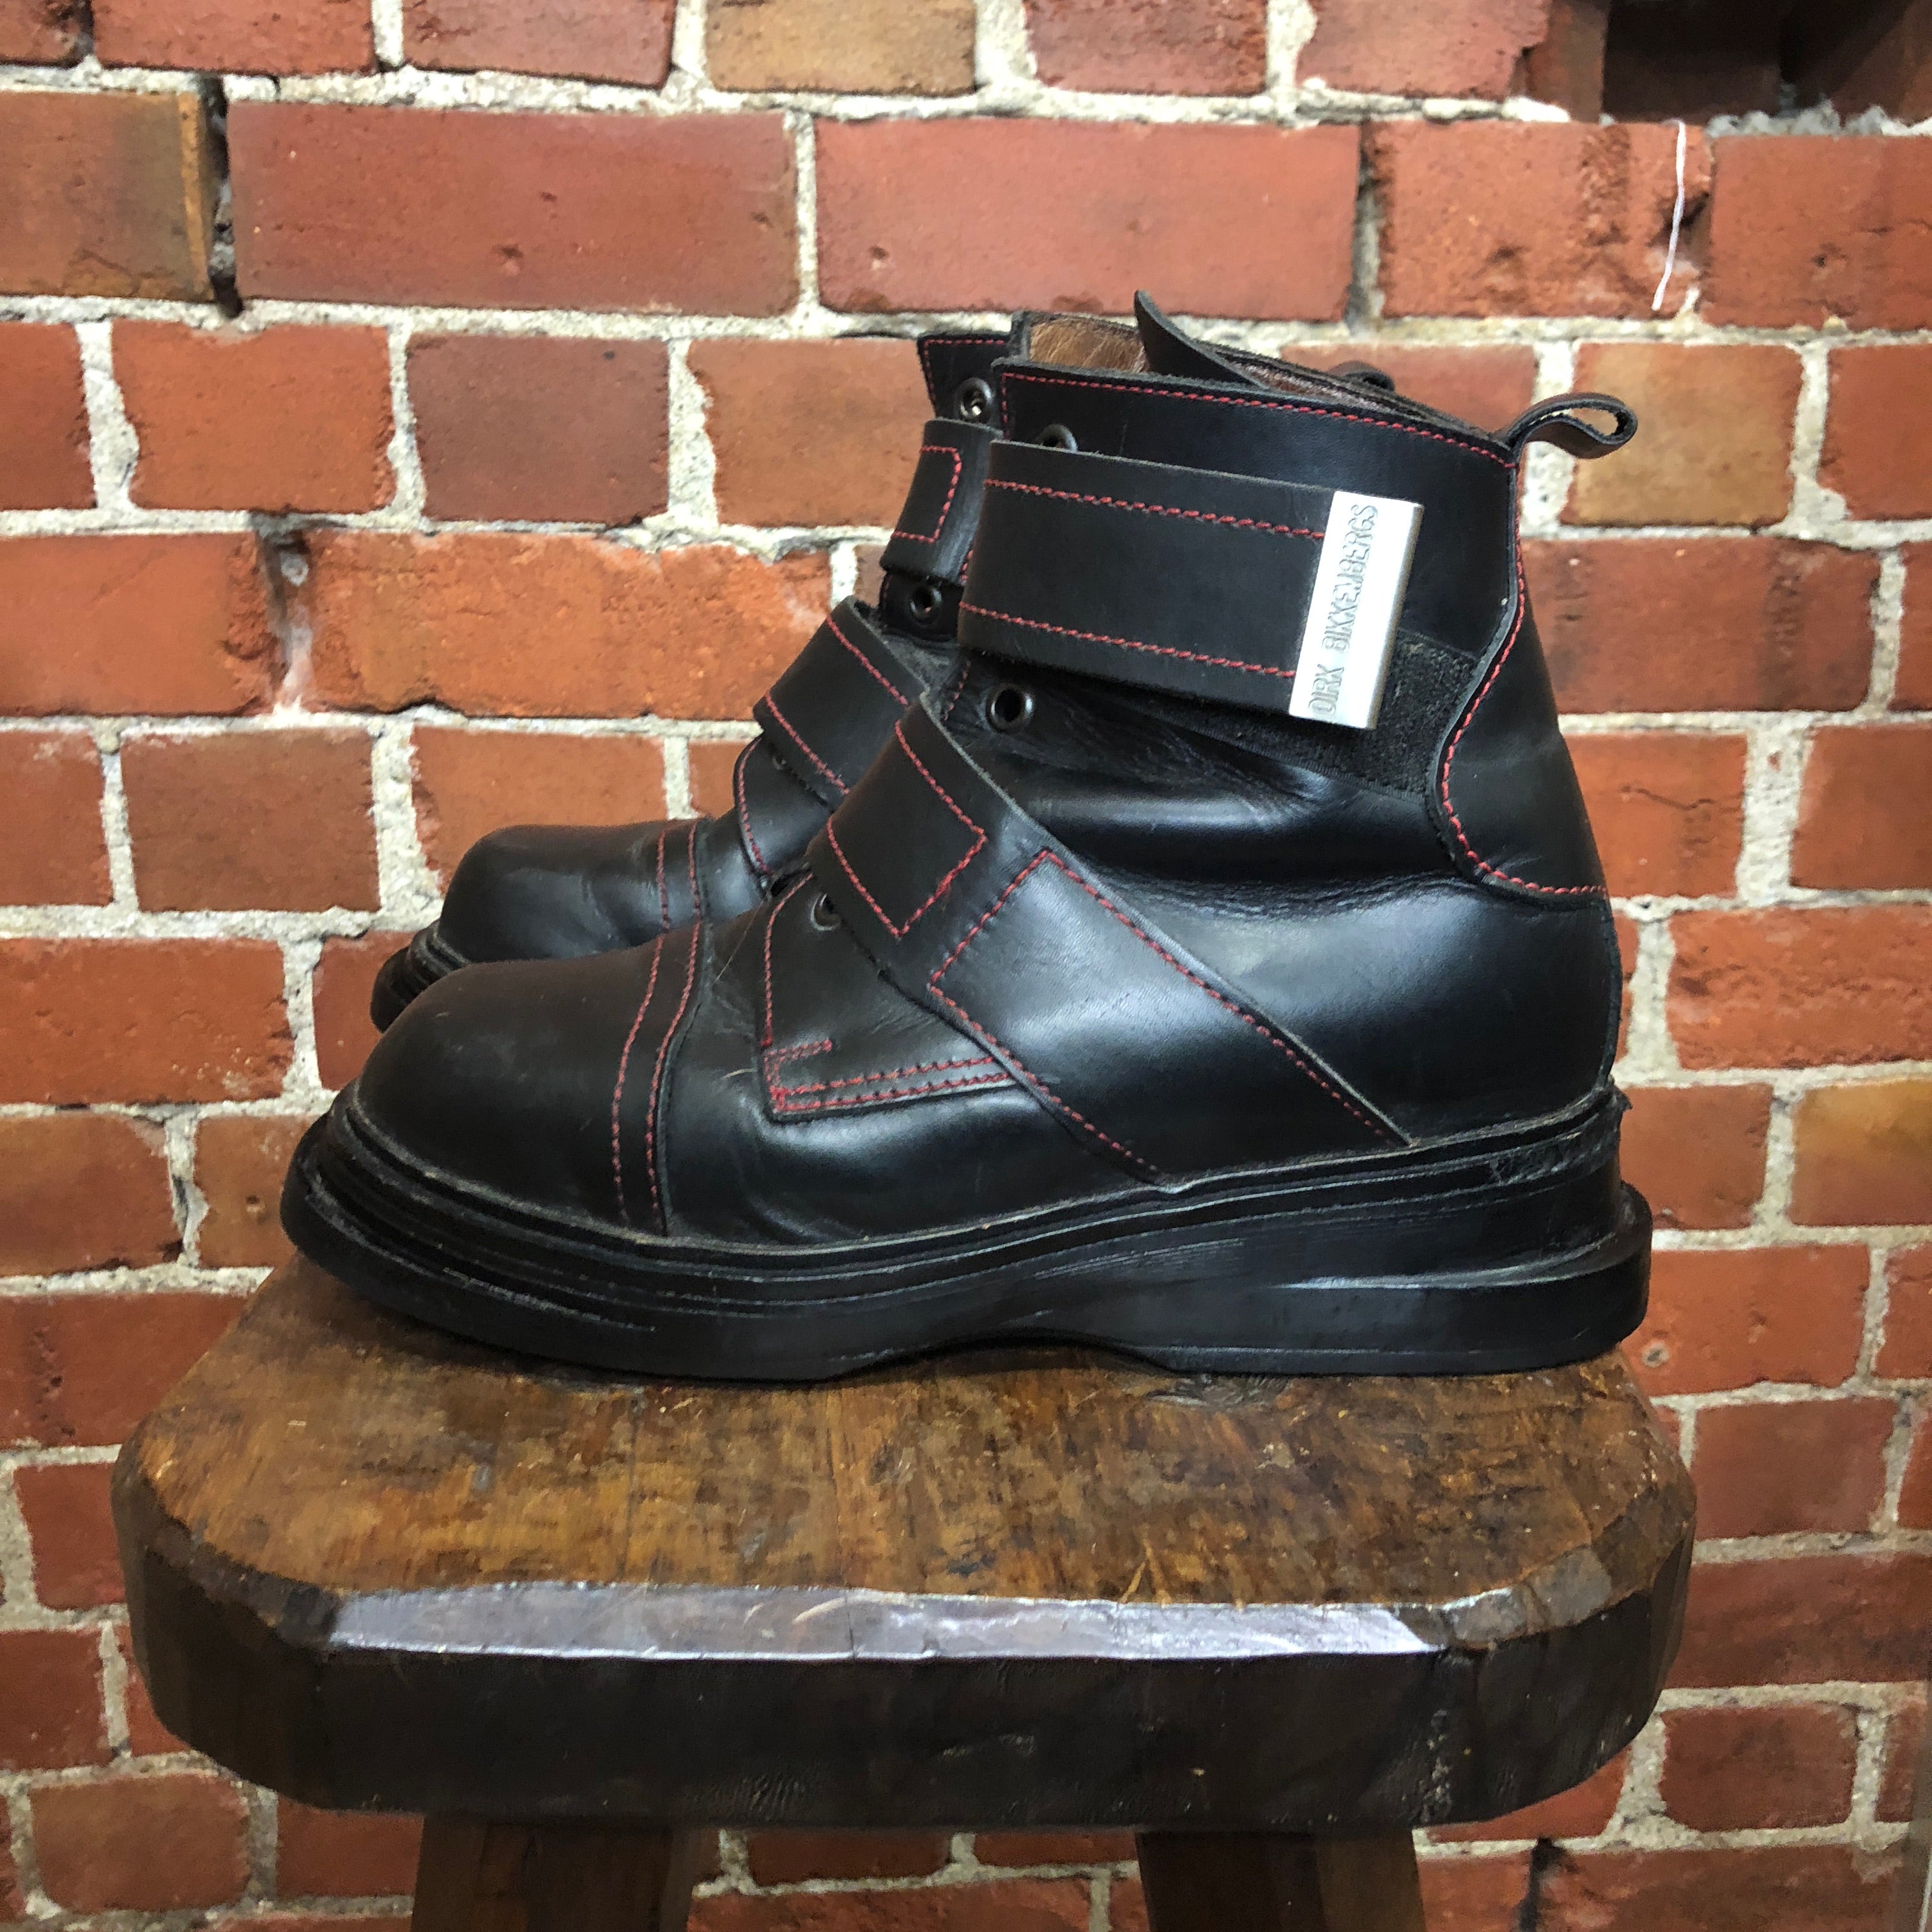 DIRK BIKKENBERG 1990S leather boots 37